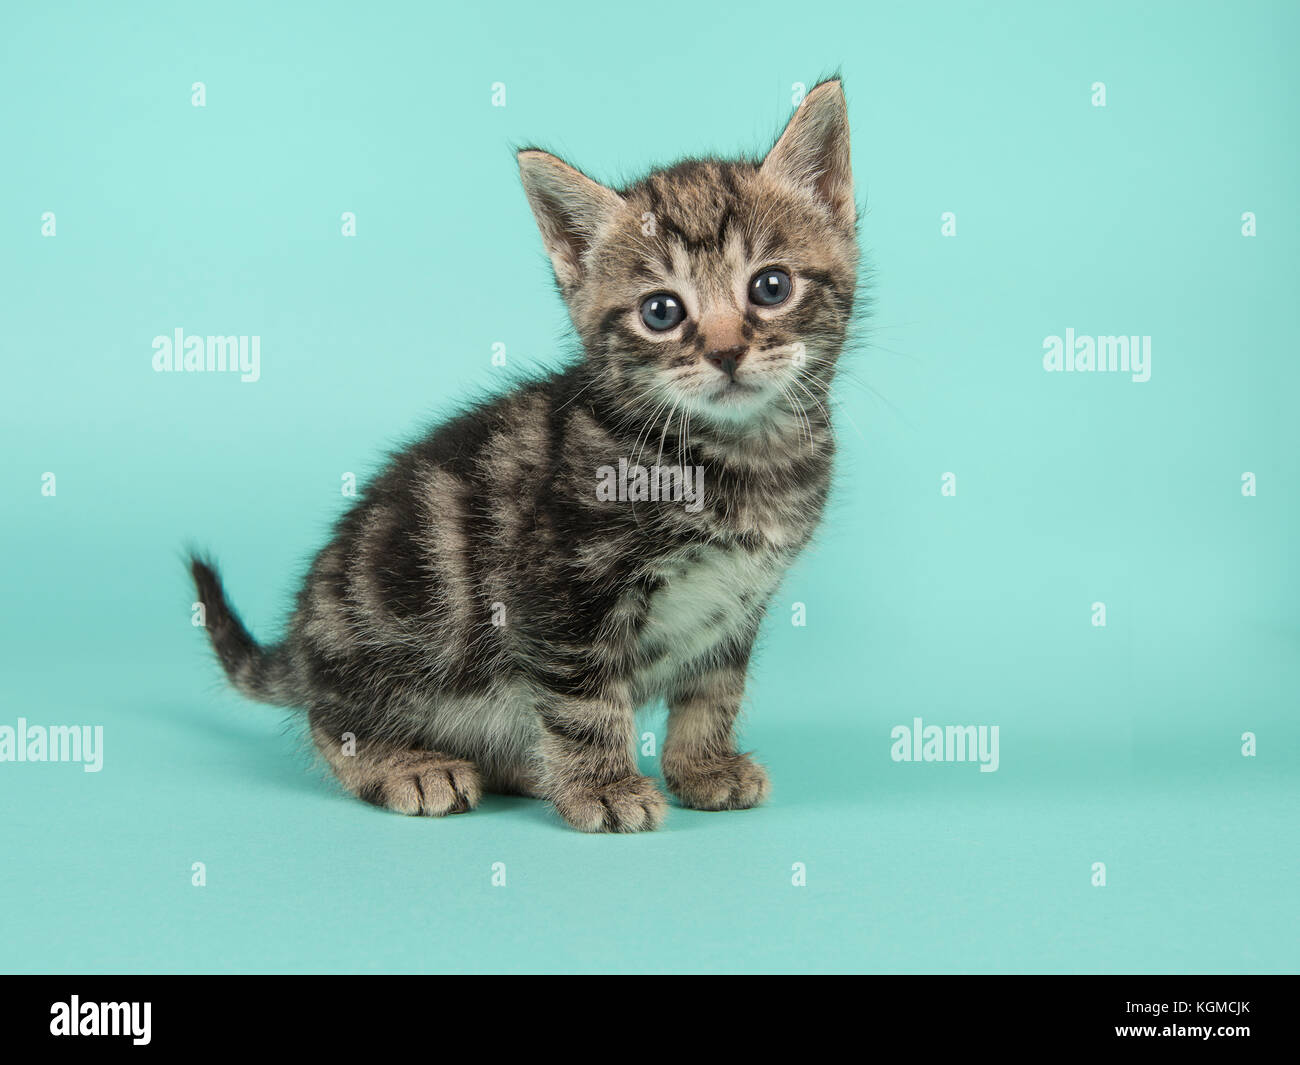 Süße 6 Wochen alte Katze Baby Katze in die Kamera schaut auf einem  türkis-blauen Hintergrund Stockfotografie - Alamy